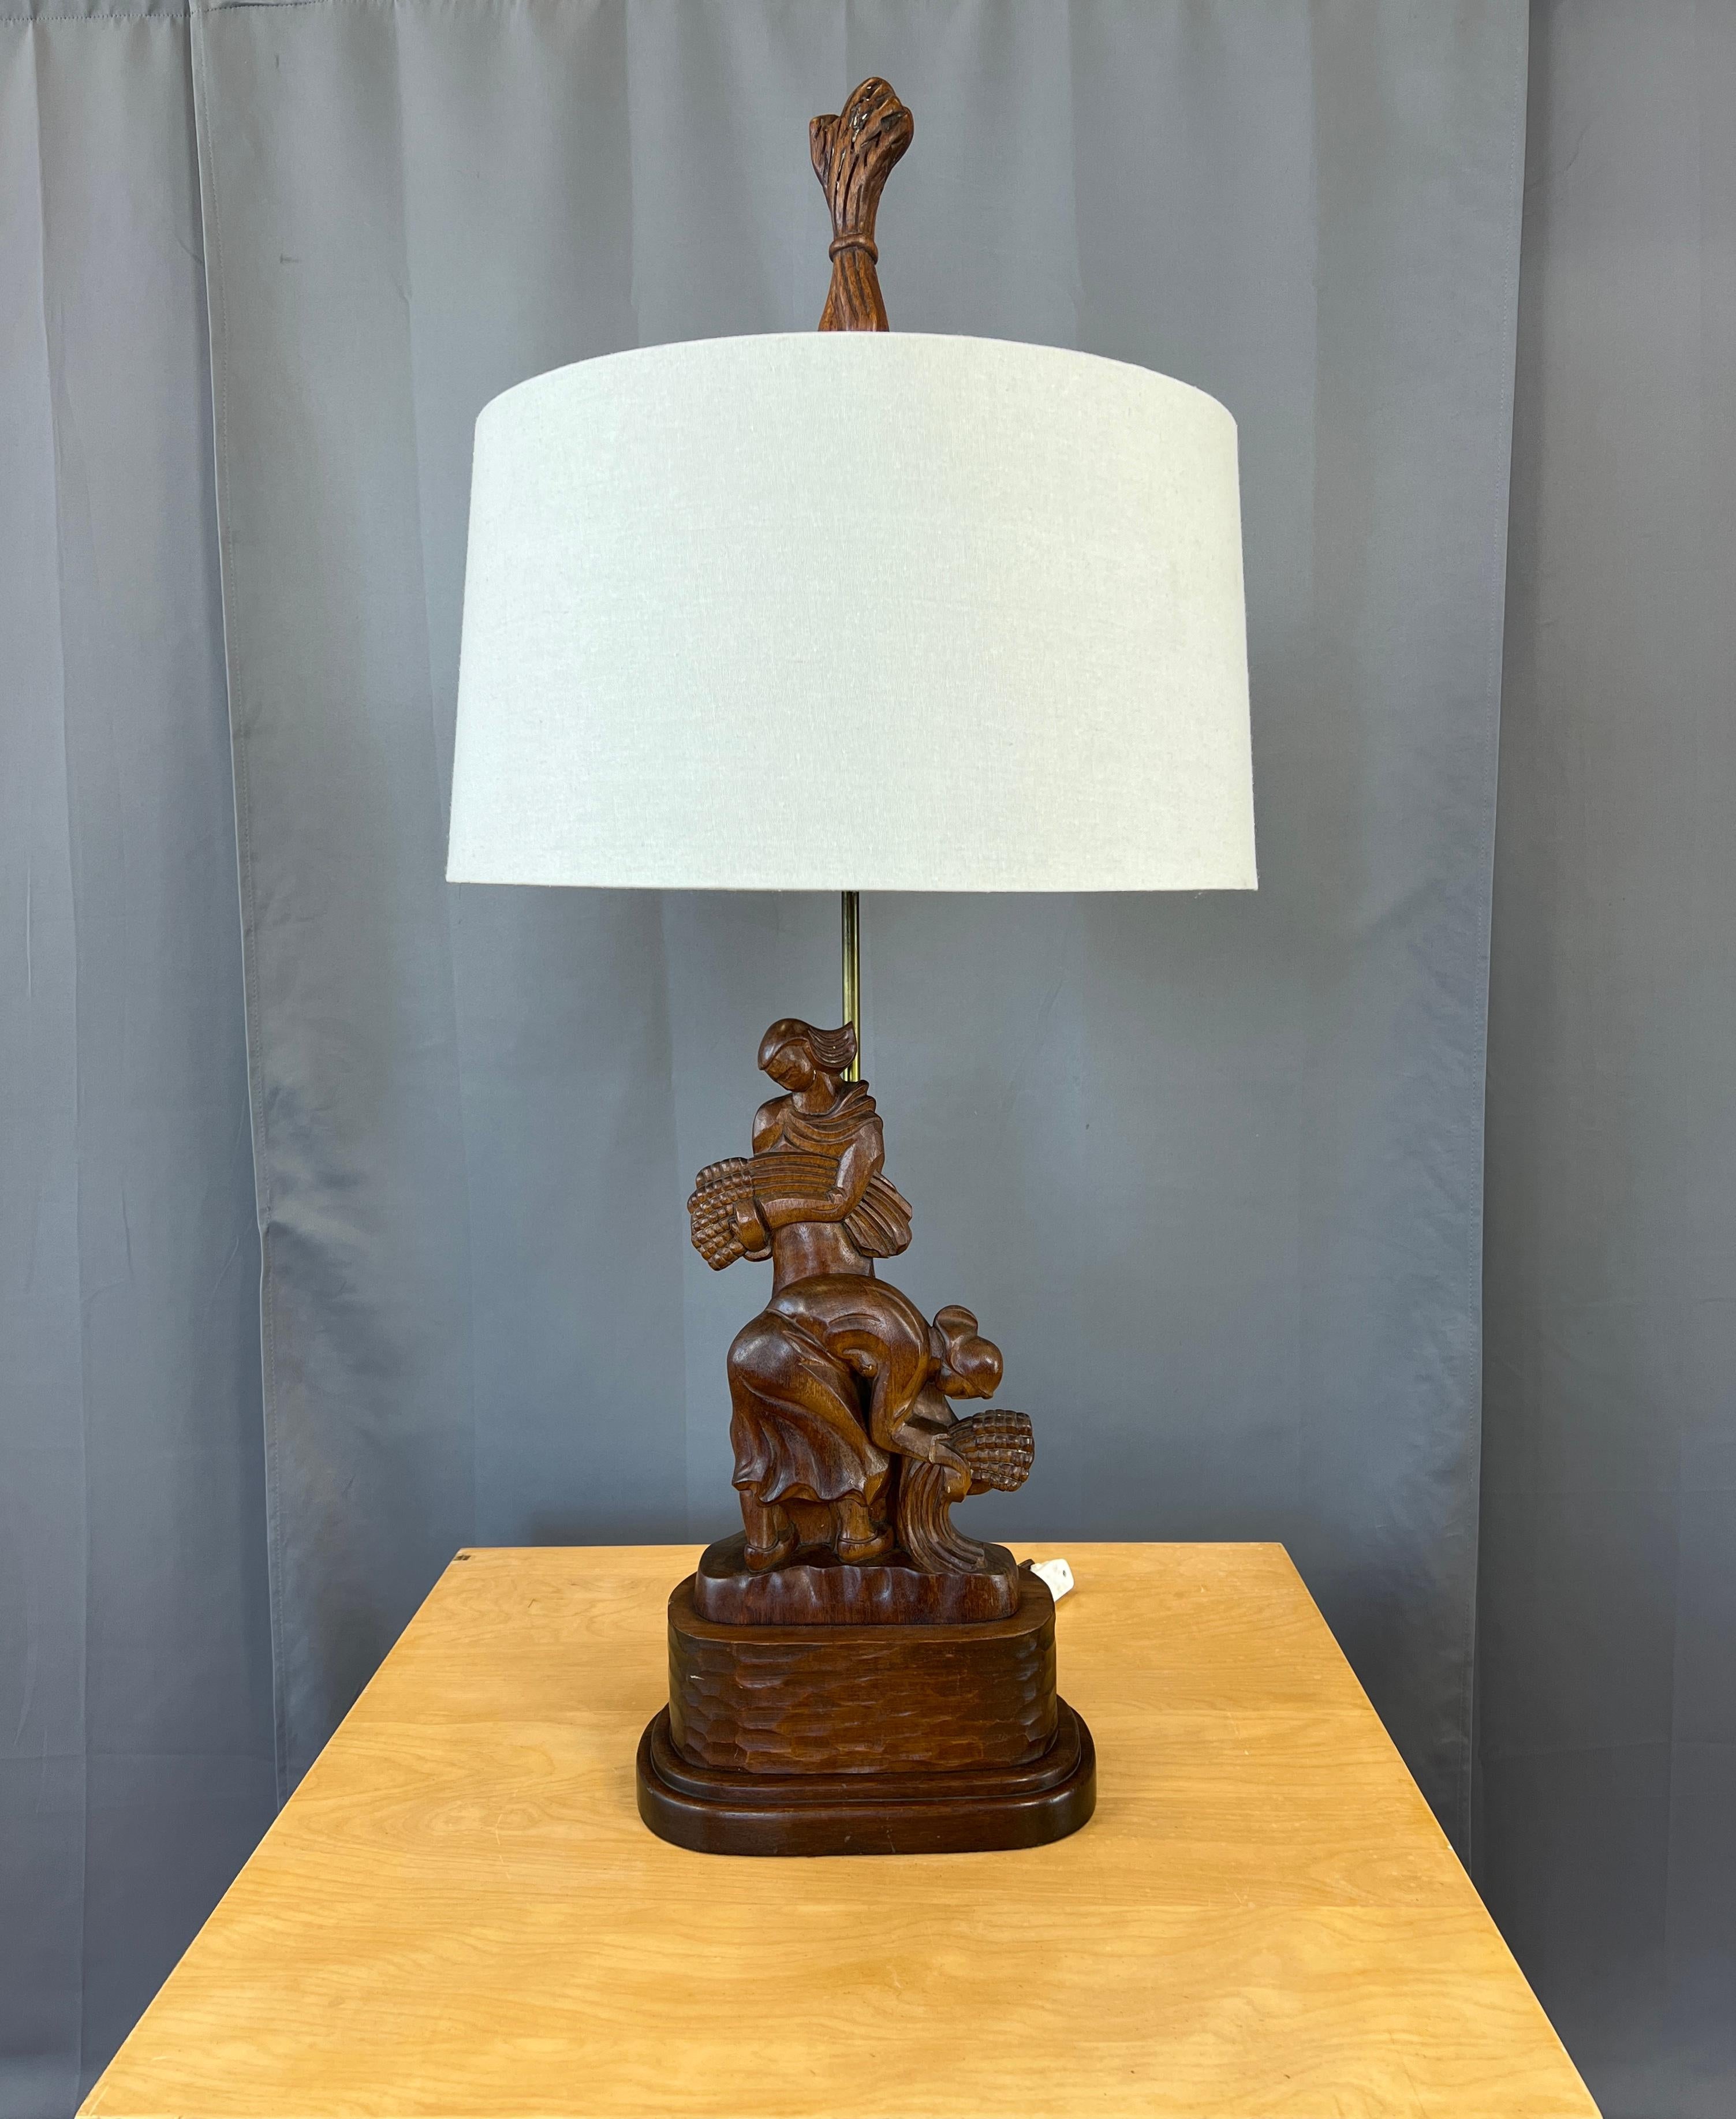 Hier wird eine monumentale geschnitzte Mahagoni-Tischlampe aus den 1940er Jahren angeboten, deren Design von Frauen beim Ernten von Weizen zeigt.
Auf der Rückseite ist der Herstellername Heifetz eingraviert.

Die unten angegebenen Maße beziehen